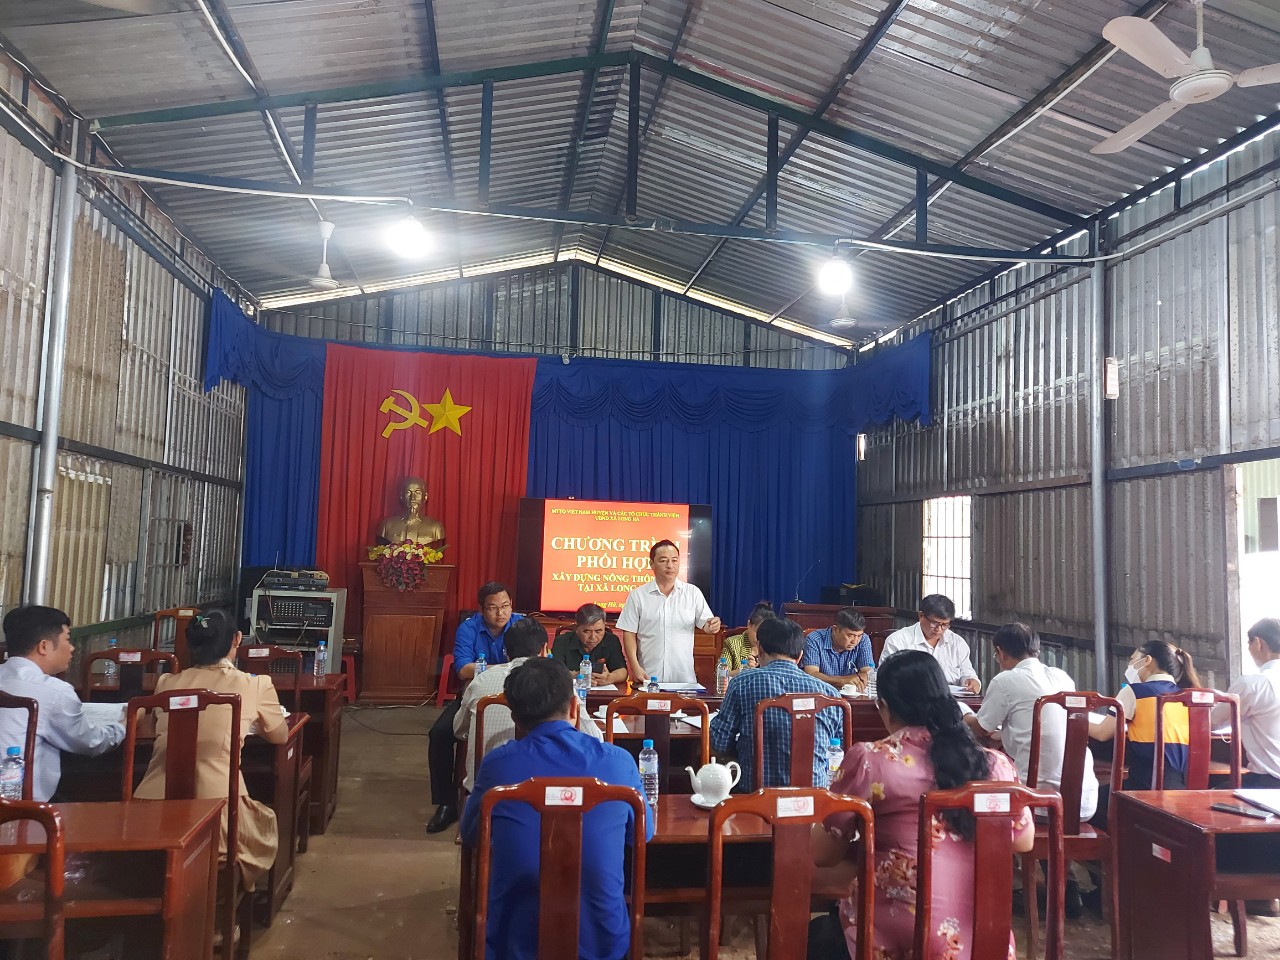 Ủy ban MTTQ Việt Nam và các tổ chức thành viên làm việc với UBND xã Long Hà về chương trình xây dựng Nông thôn mới tại xã Long Hà năm 2022